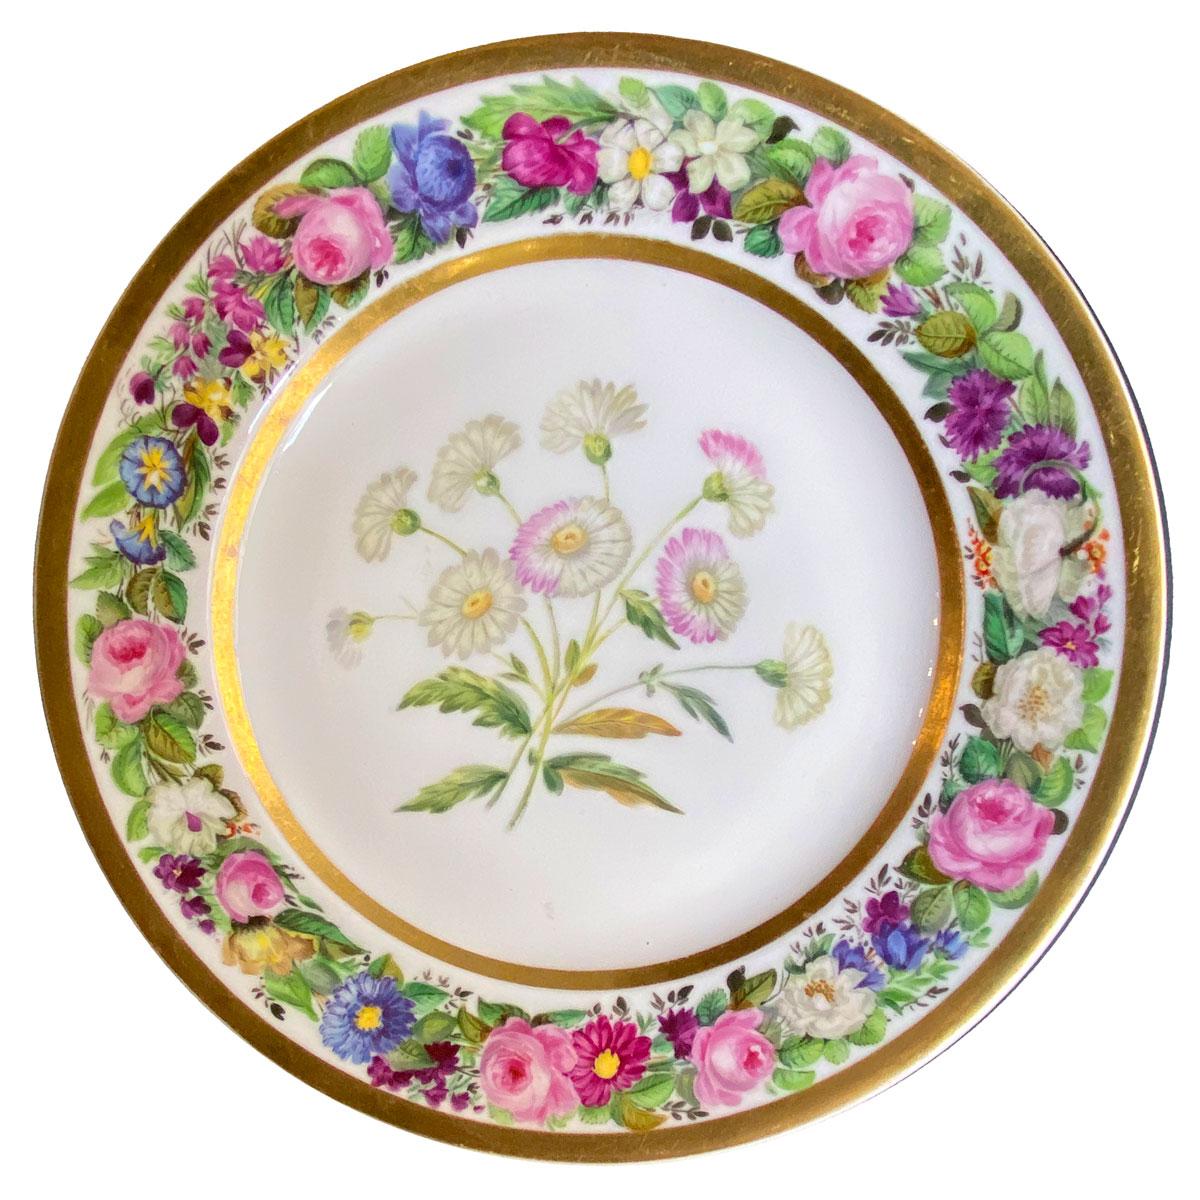 Porcelain Set of 6 Early 19th Century Flower Plates by Denuelle - Vieux Paris 